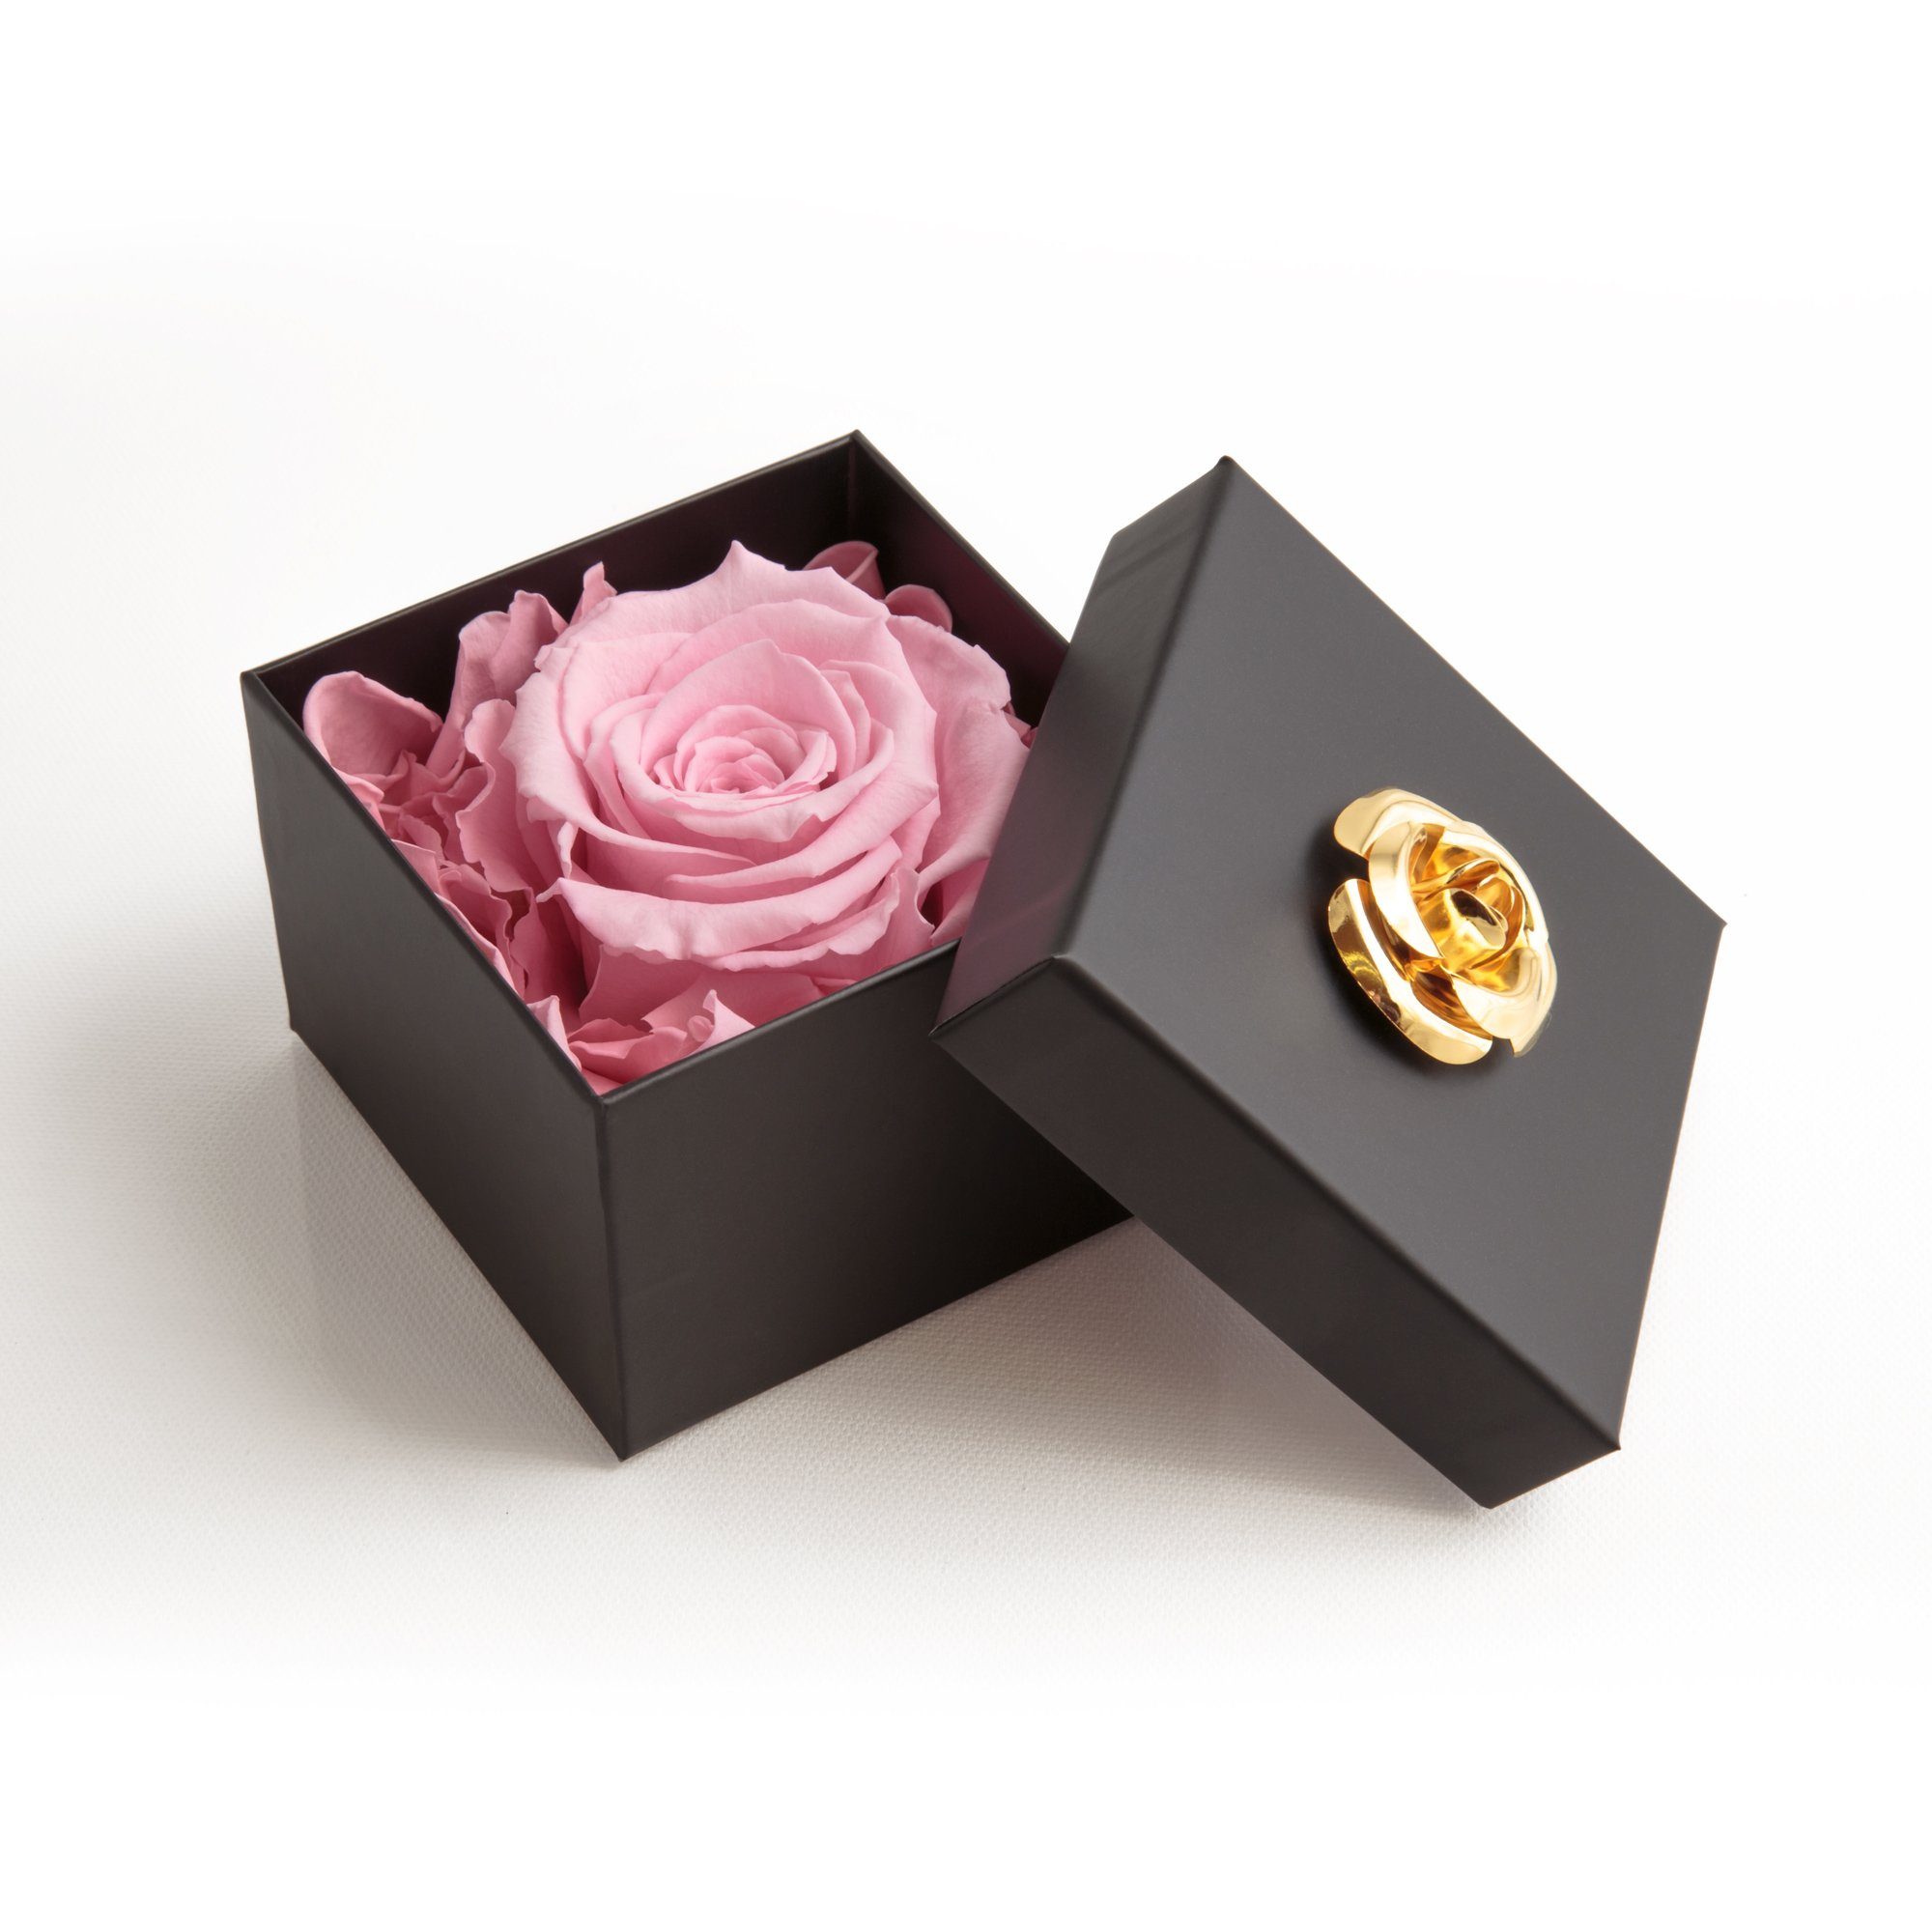 Kunstblume 1 Infinity Rose haltbar 3 Jahre Rose in Box mit Blumendeckel Rose, ROSEMARIE SCHULZ Heidelberg, Höhe 6.5 cm, Echte Rose haltbar bis zu 3 Jahre rosa